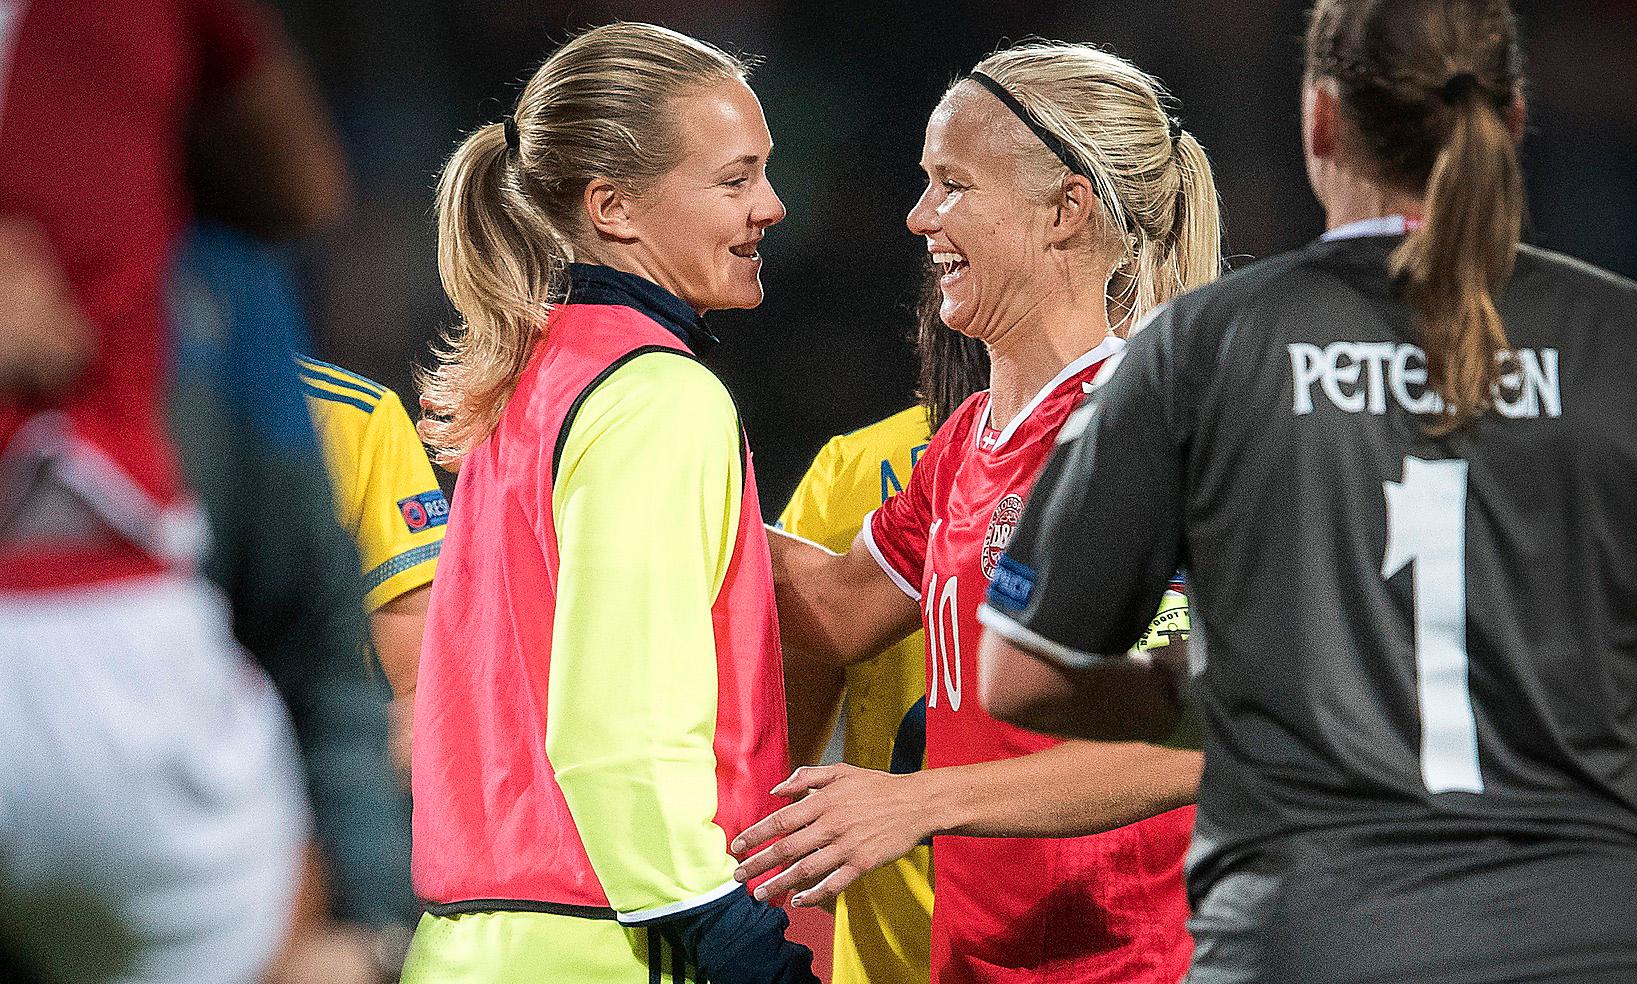 De är ett par, men i VM-kvalet ställs den svenska försvararen Magdalena  Eriksson och Danmarks forwardsstjärna Pernille Harder mot varandra. ”Vi skiljer på det sportsliga och det personliga just nu”, säger Eriksson.